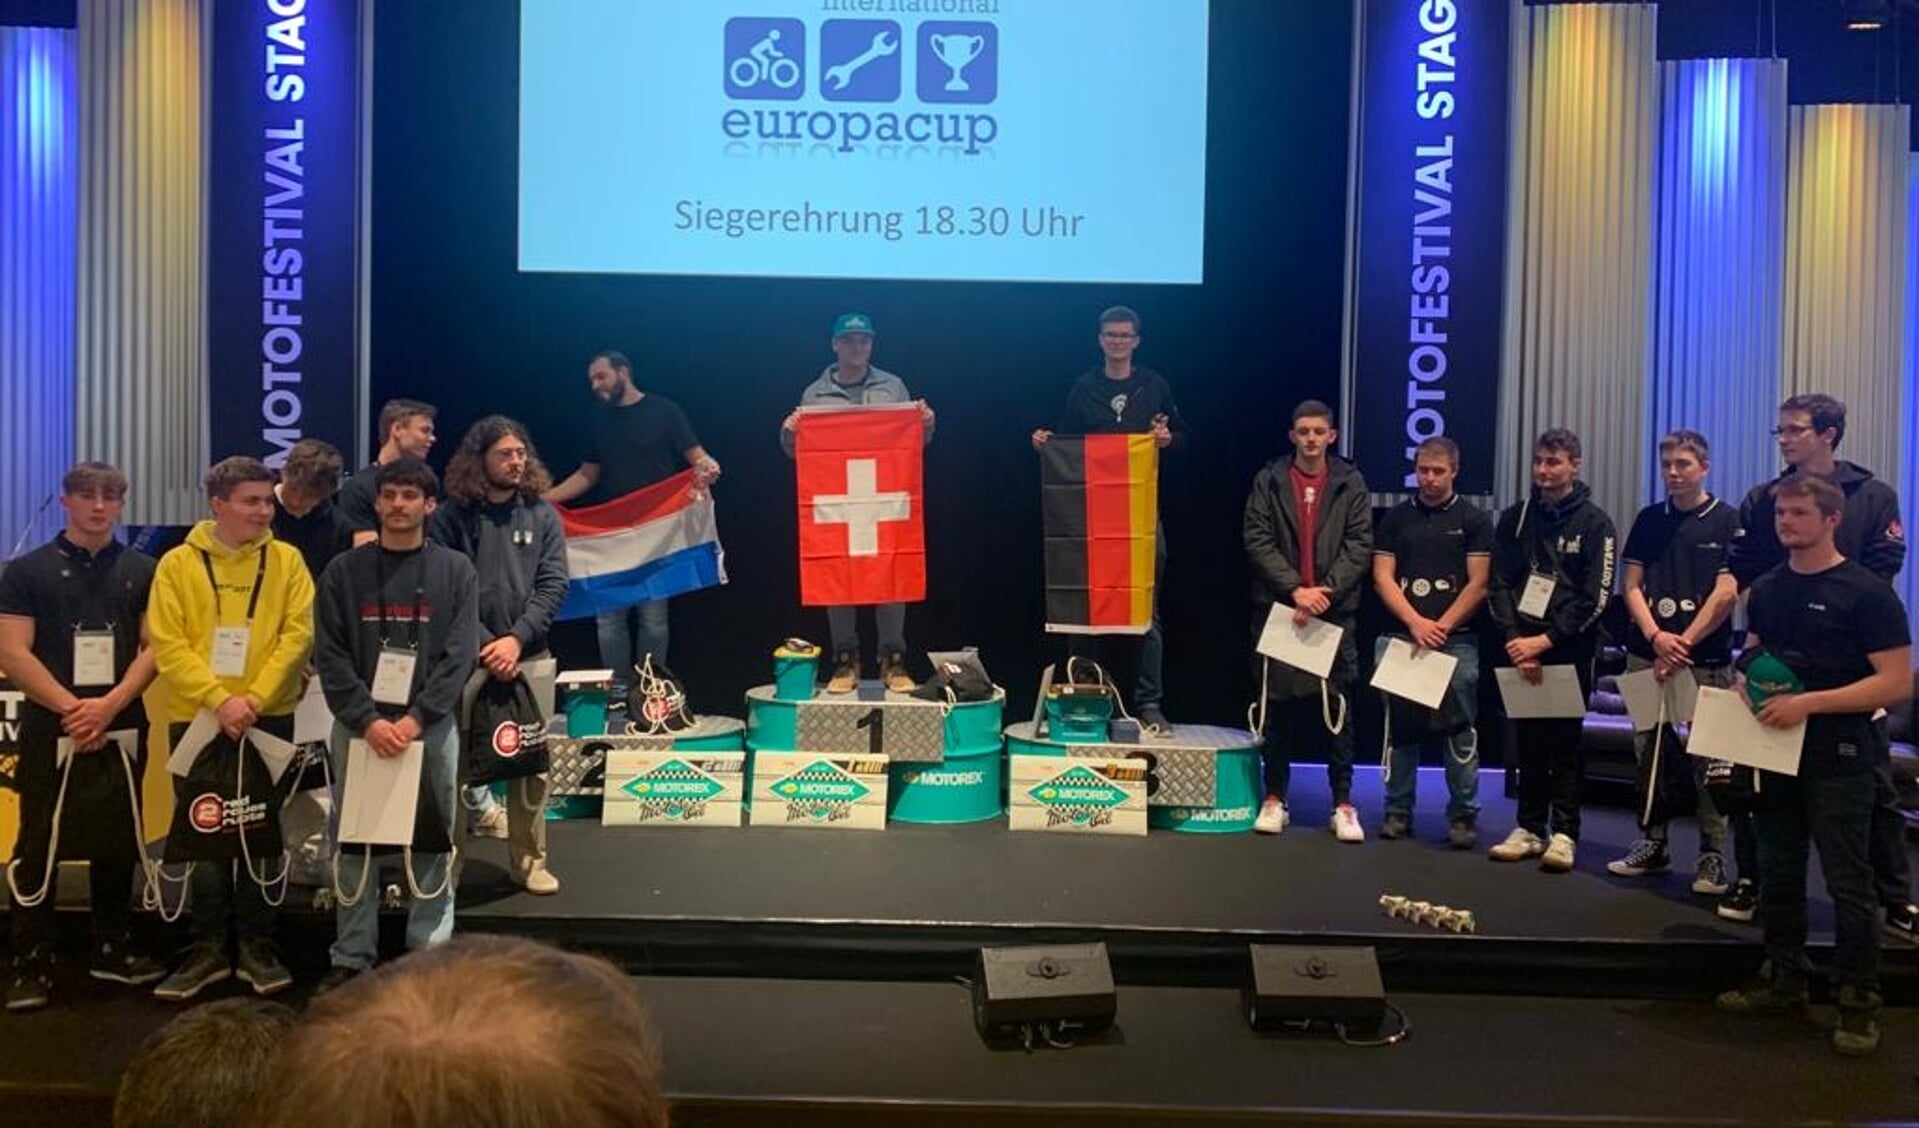 Rijswijker Sydney van der Heijden vertegenwoordigde Nederland tijdens de Europacup Tweewielers in Bern, ook wel MOTO Festival genoemd.